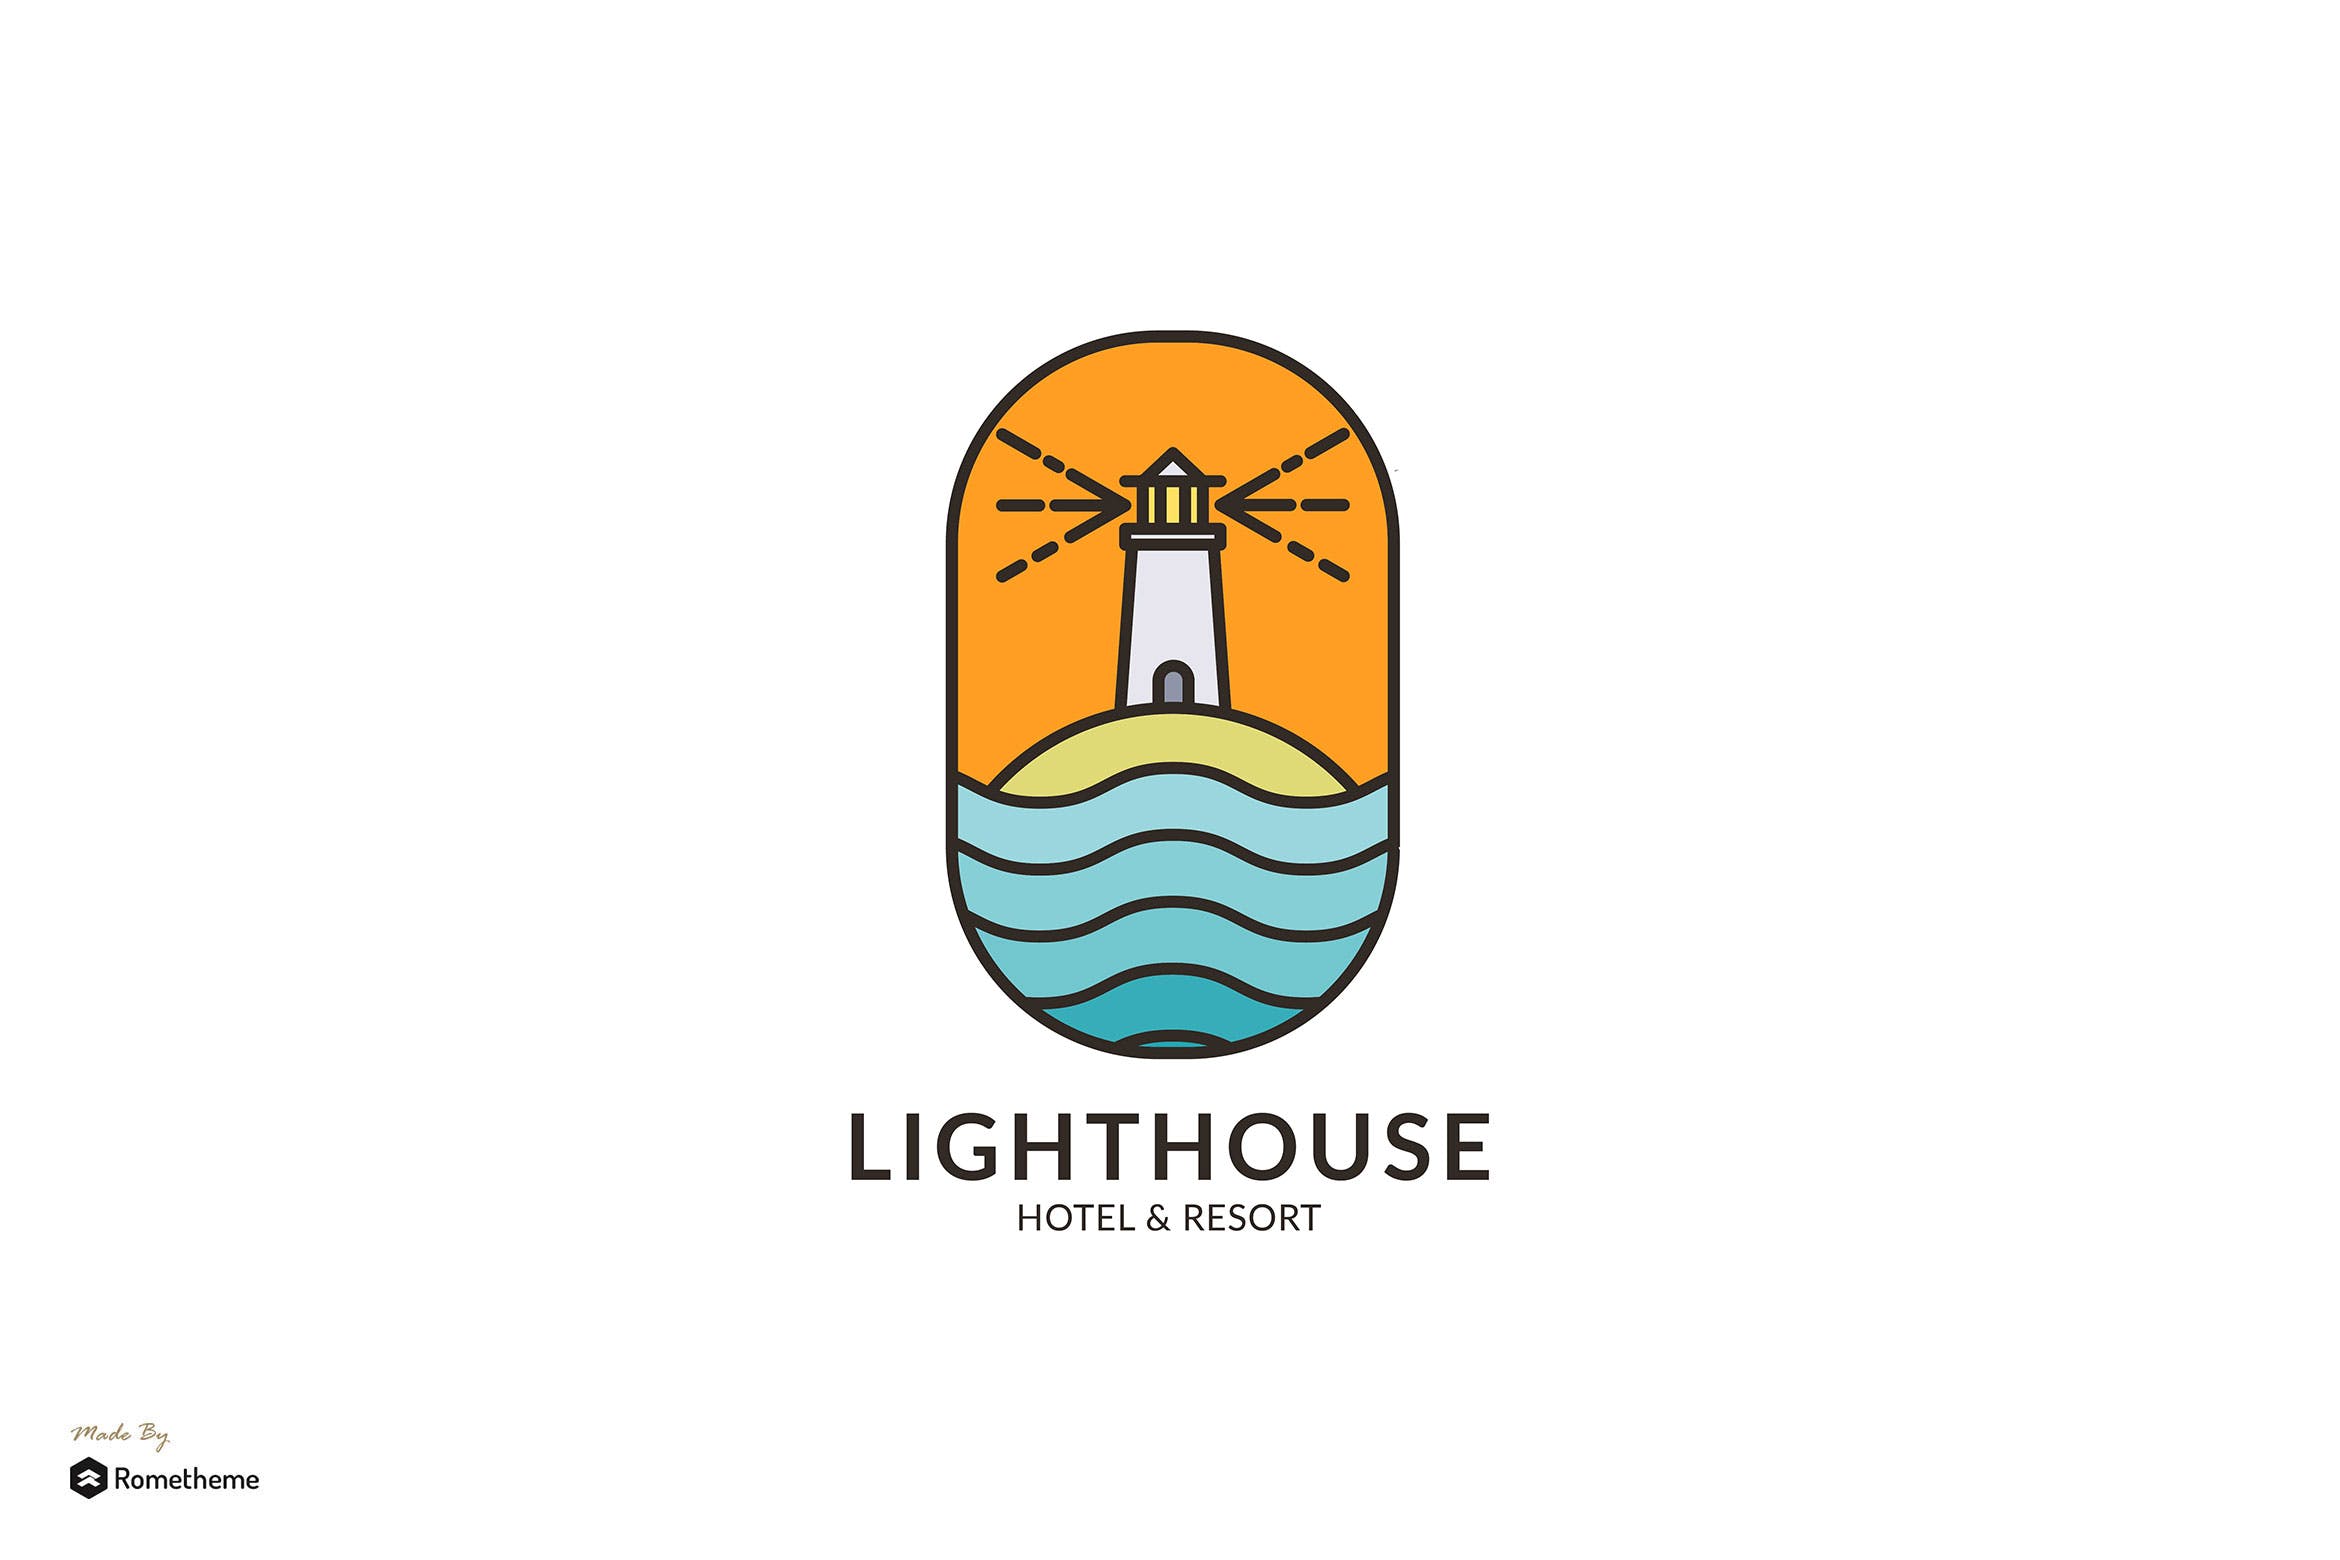 灯塔酒店/度假村商标&品牌Logo设计素材中国精选模板 Lighthouse Hotel & Resort – Logo Template RB插图